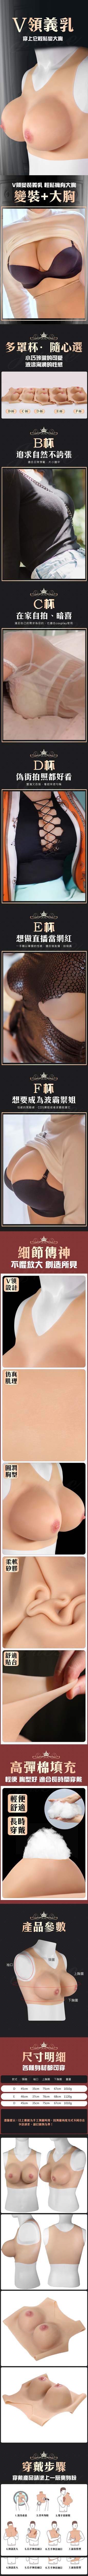 變裝大胸 V型矽膠義乳-D罩杯